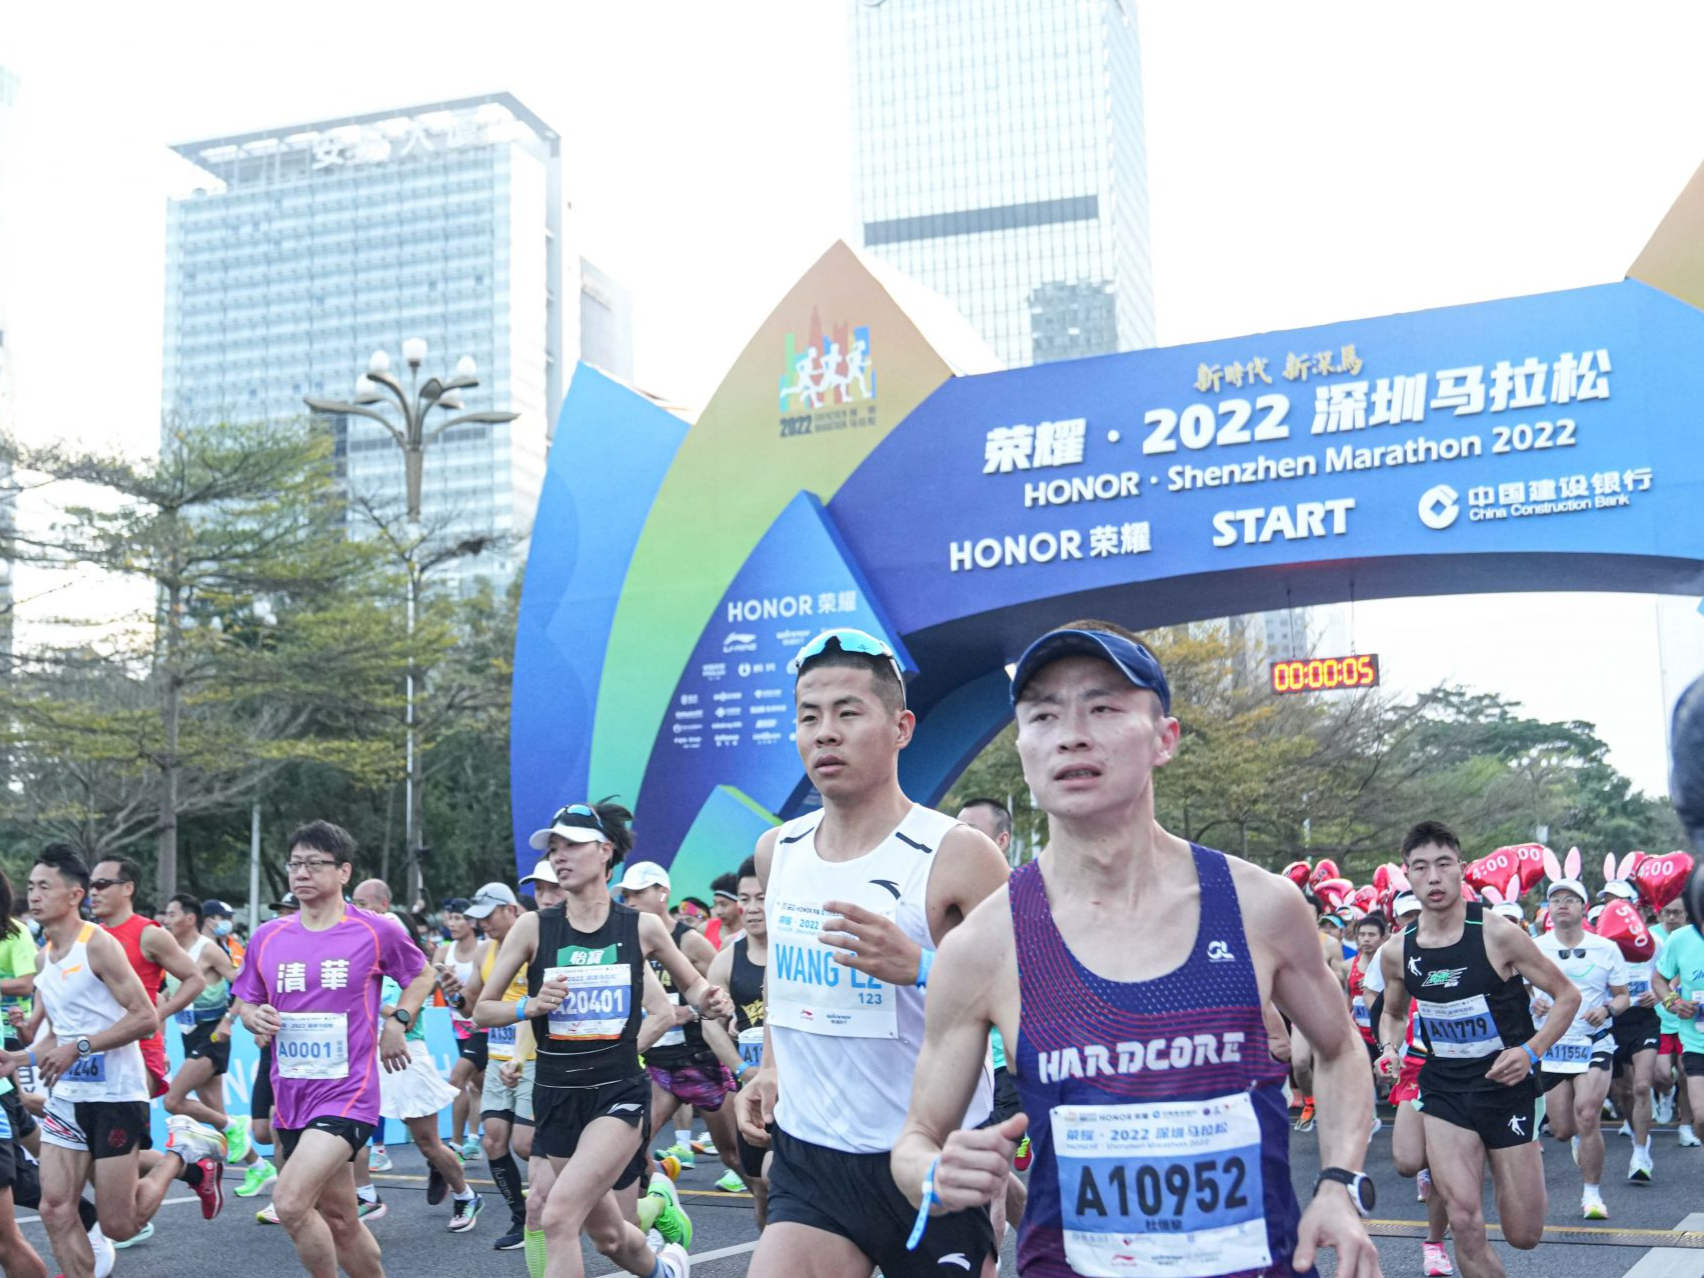 2022深圳马拉松鸣枪开跑  开启今年大型赛事活动新篇章